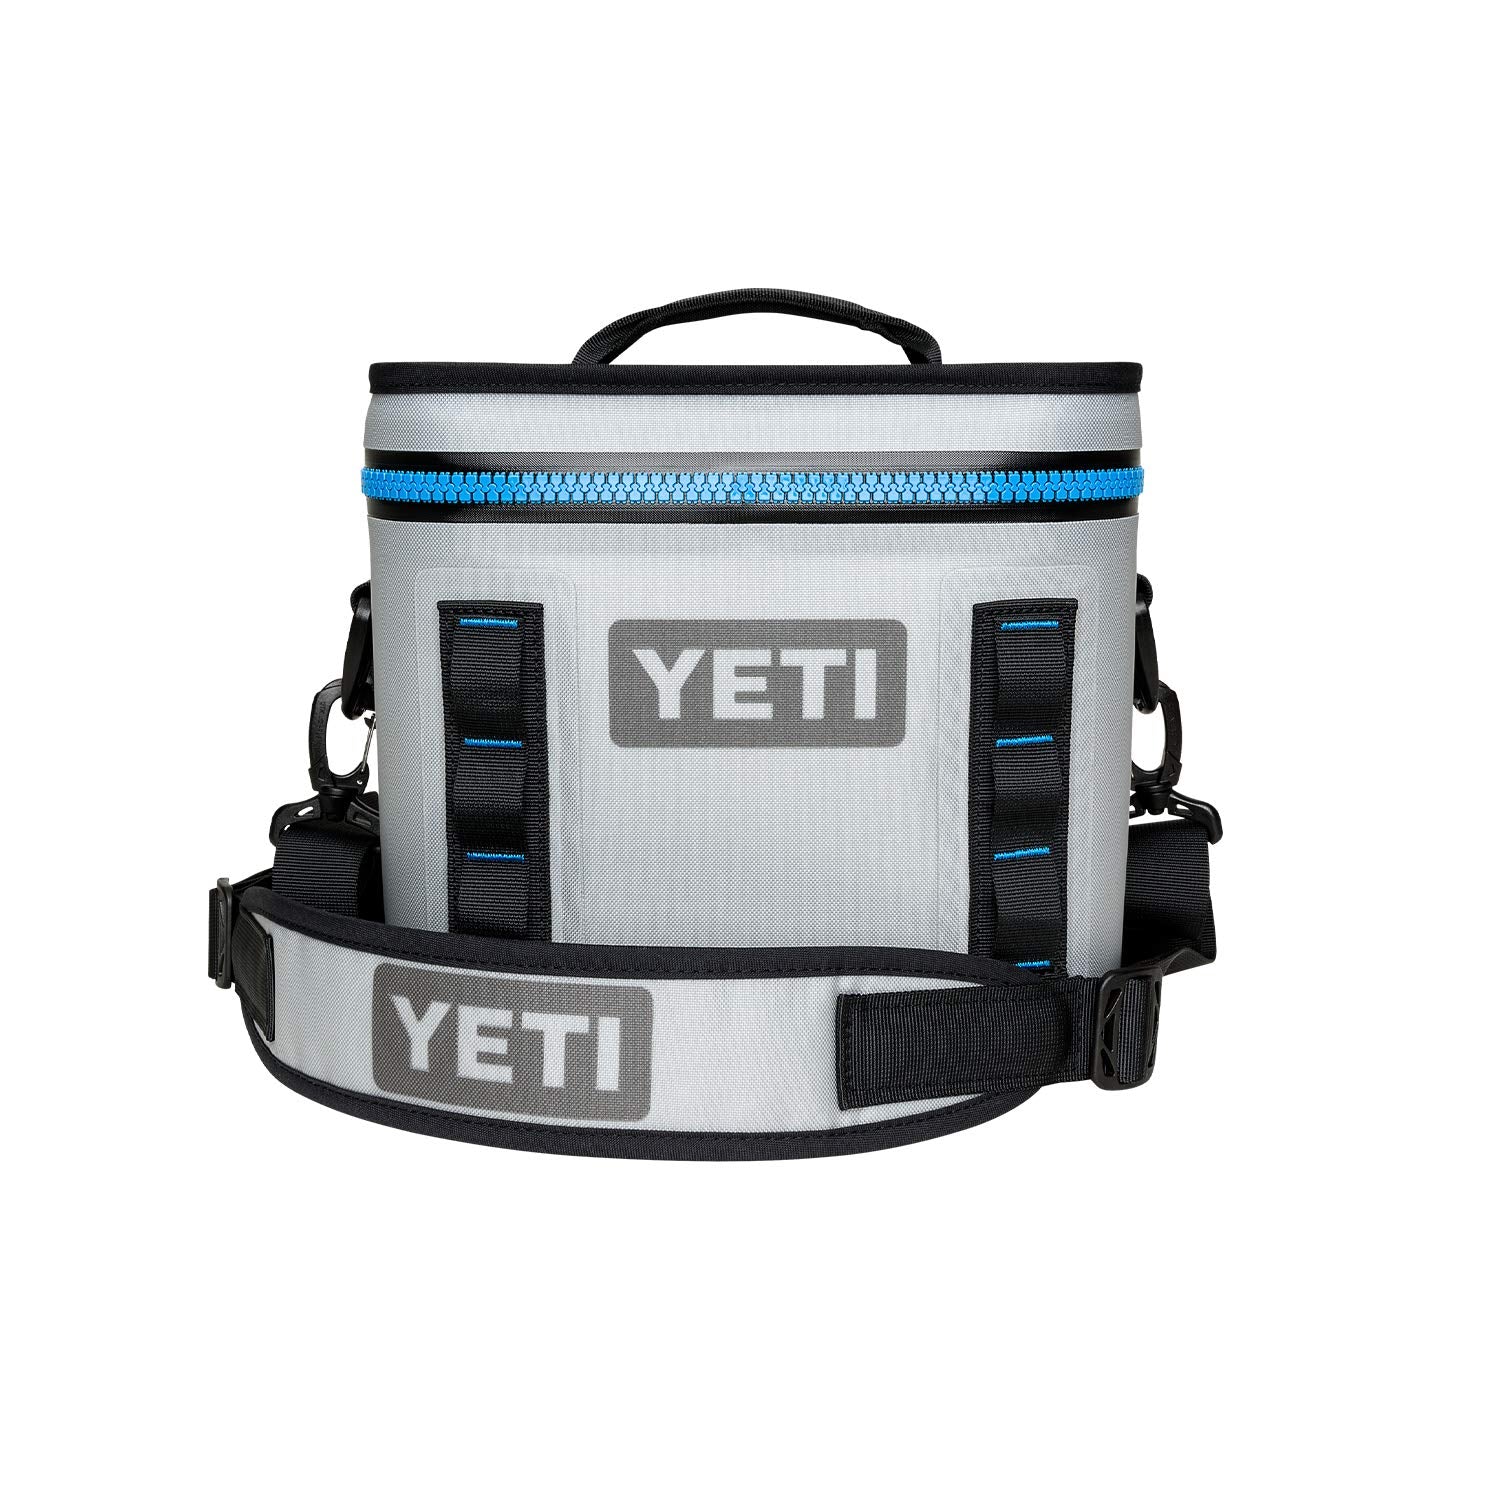 YETI Hopper Flip 18 Portable Cooler, Fog Gray/Tahoe Blue